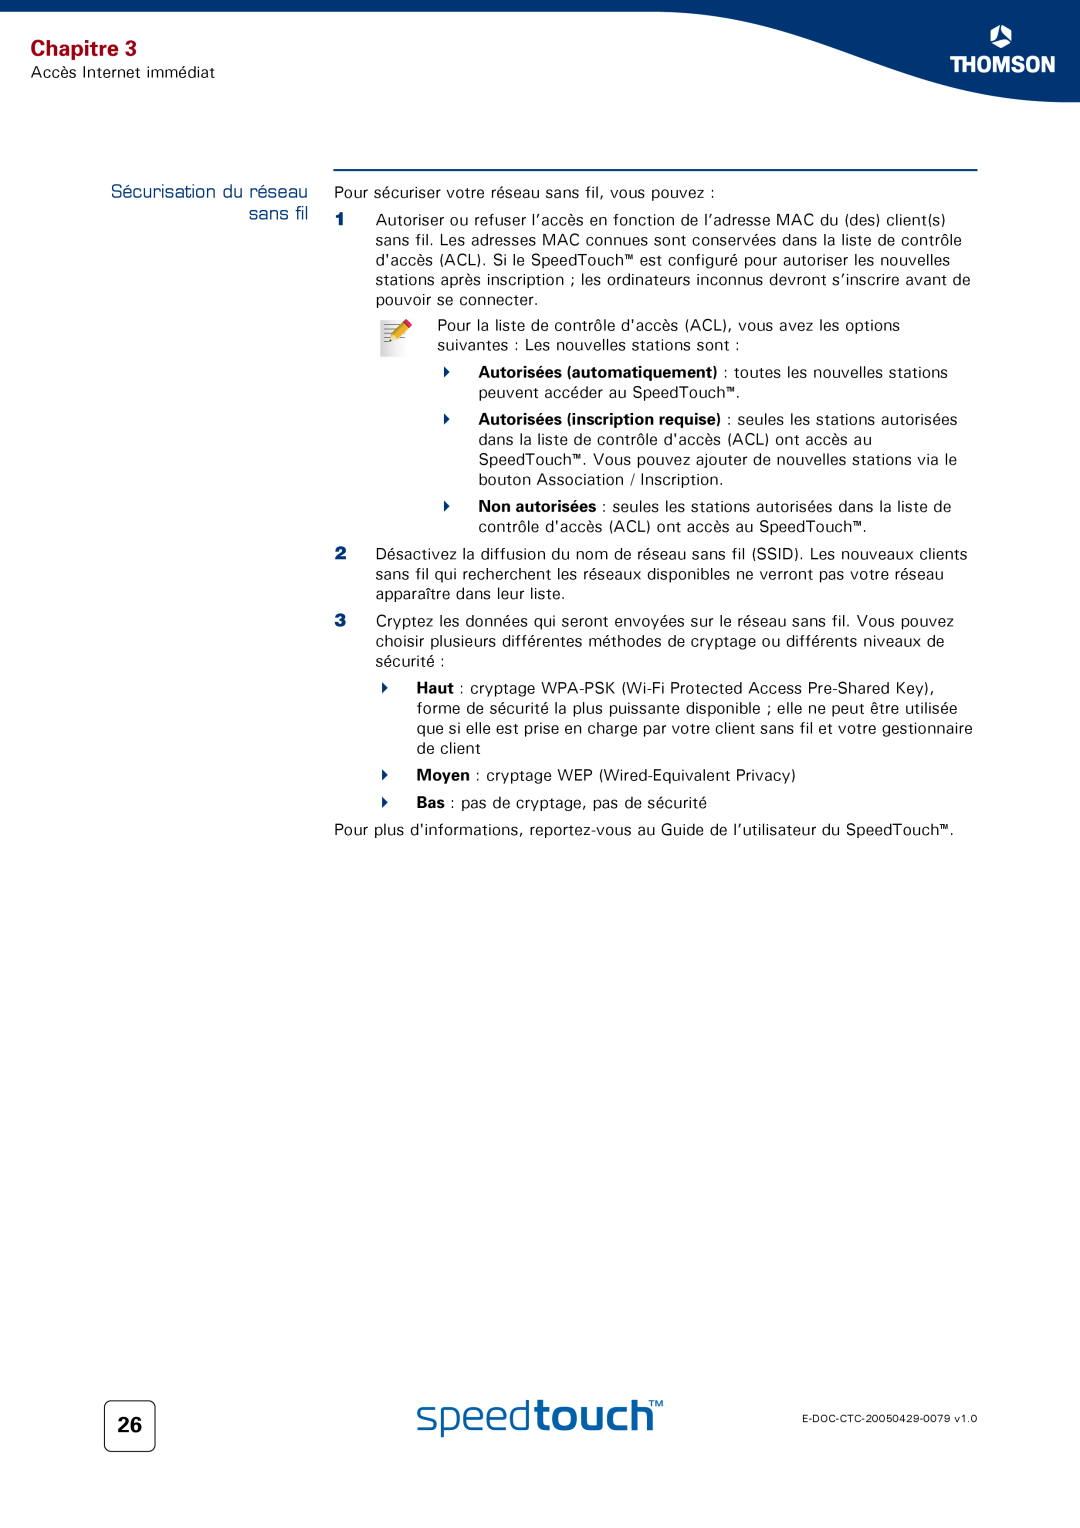 Technicolor - Thomson 716V5 (WL) manual Sécurisation du réseau sans fil, Chapitre 